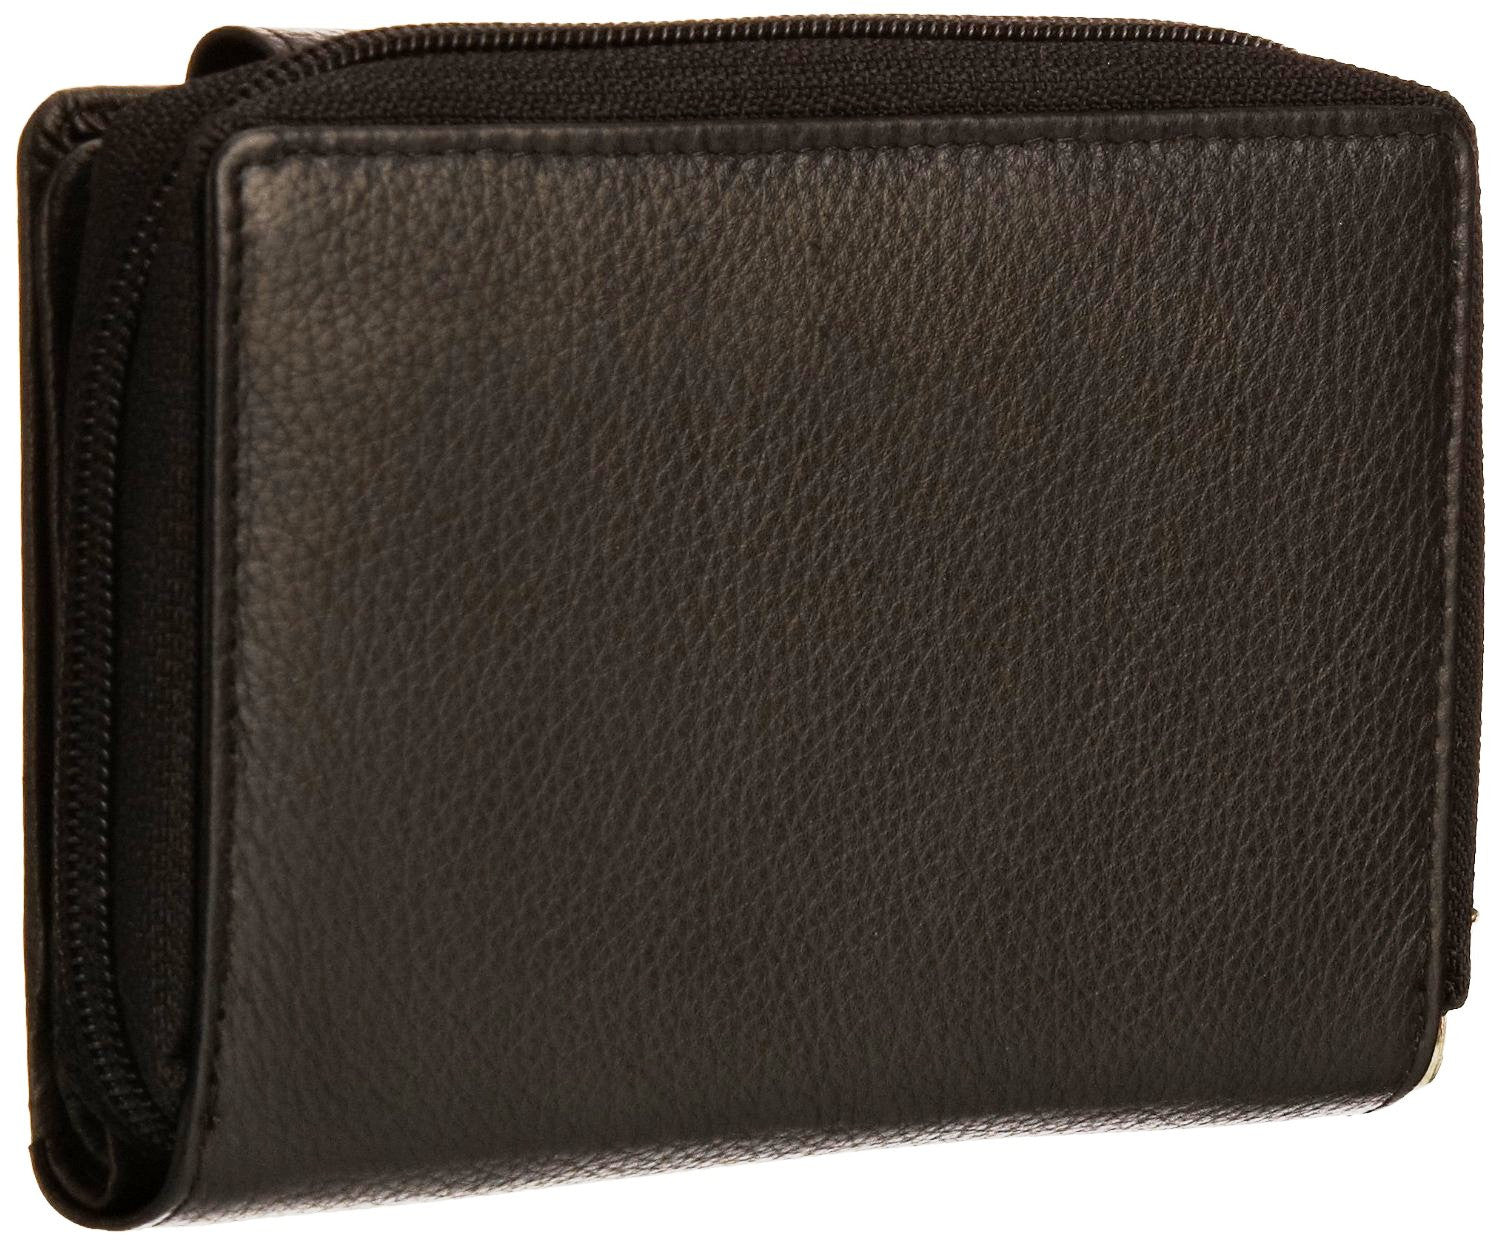 Pratico - women leather flap wallet #LW02 Black